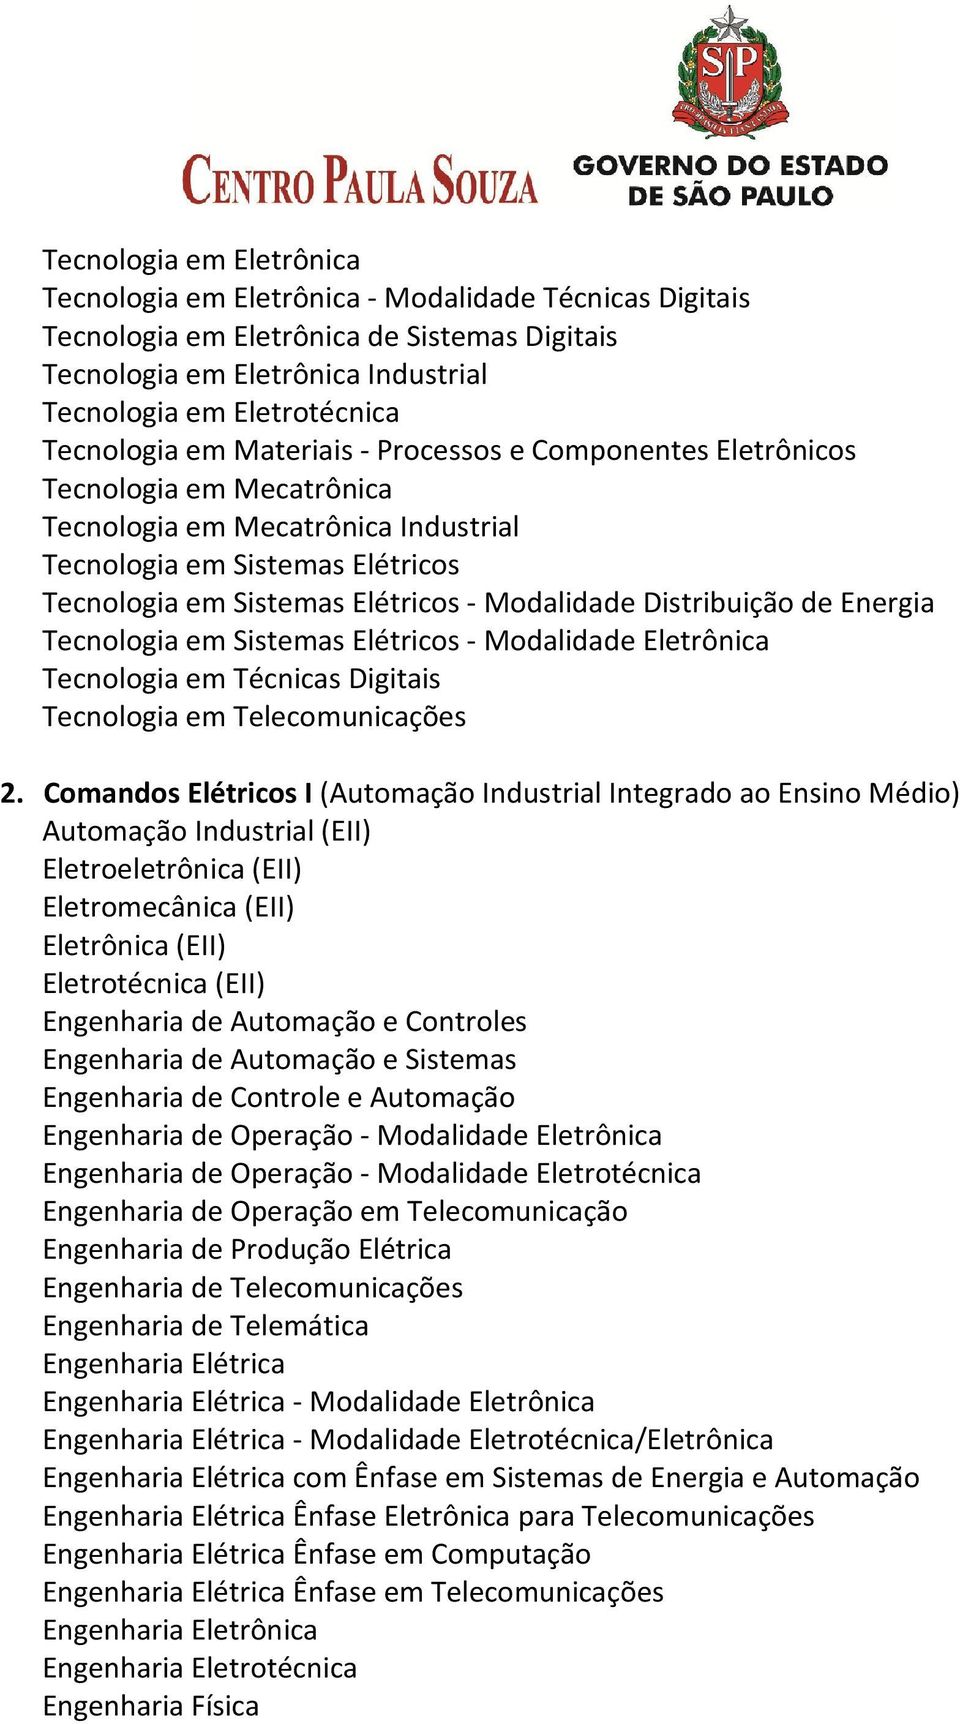 Eletromecânica (EII) Engenharia de Automação e Sistemas Engenharia de